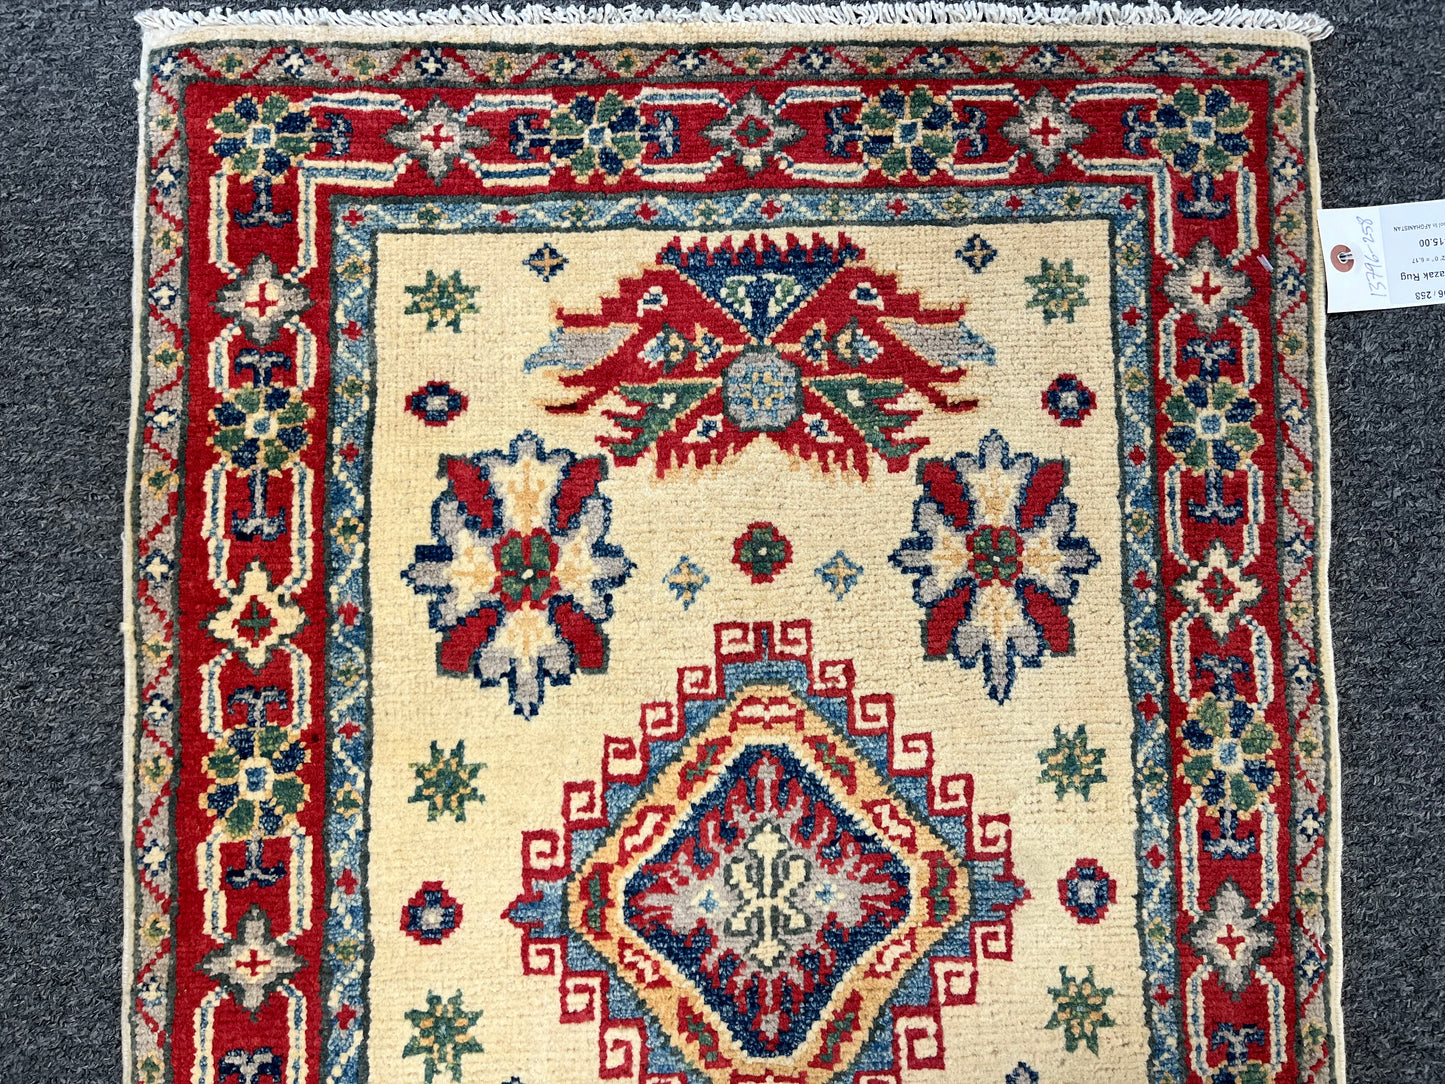 Kazak 2X3 Geometric Handmade Wool Rug # 13796